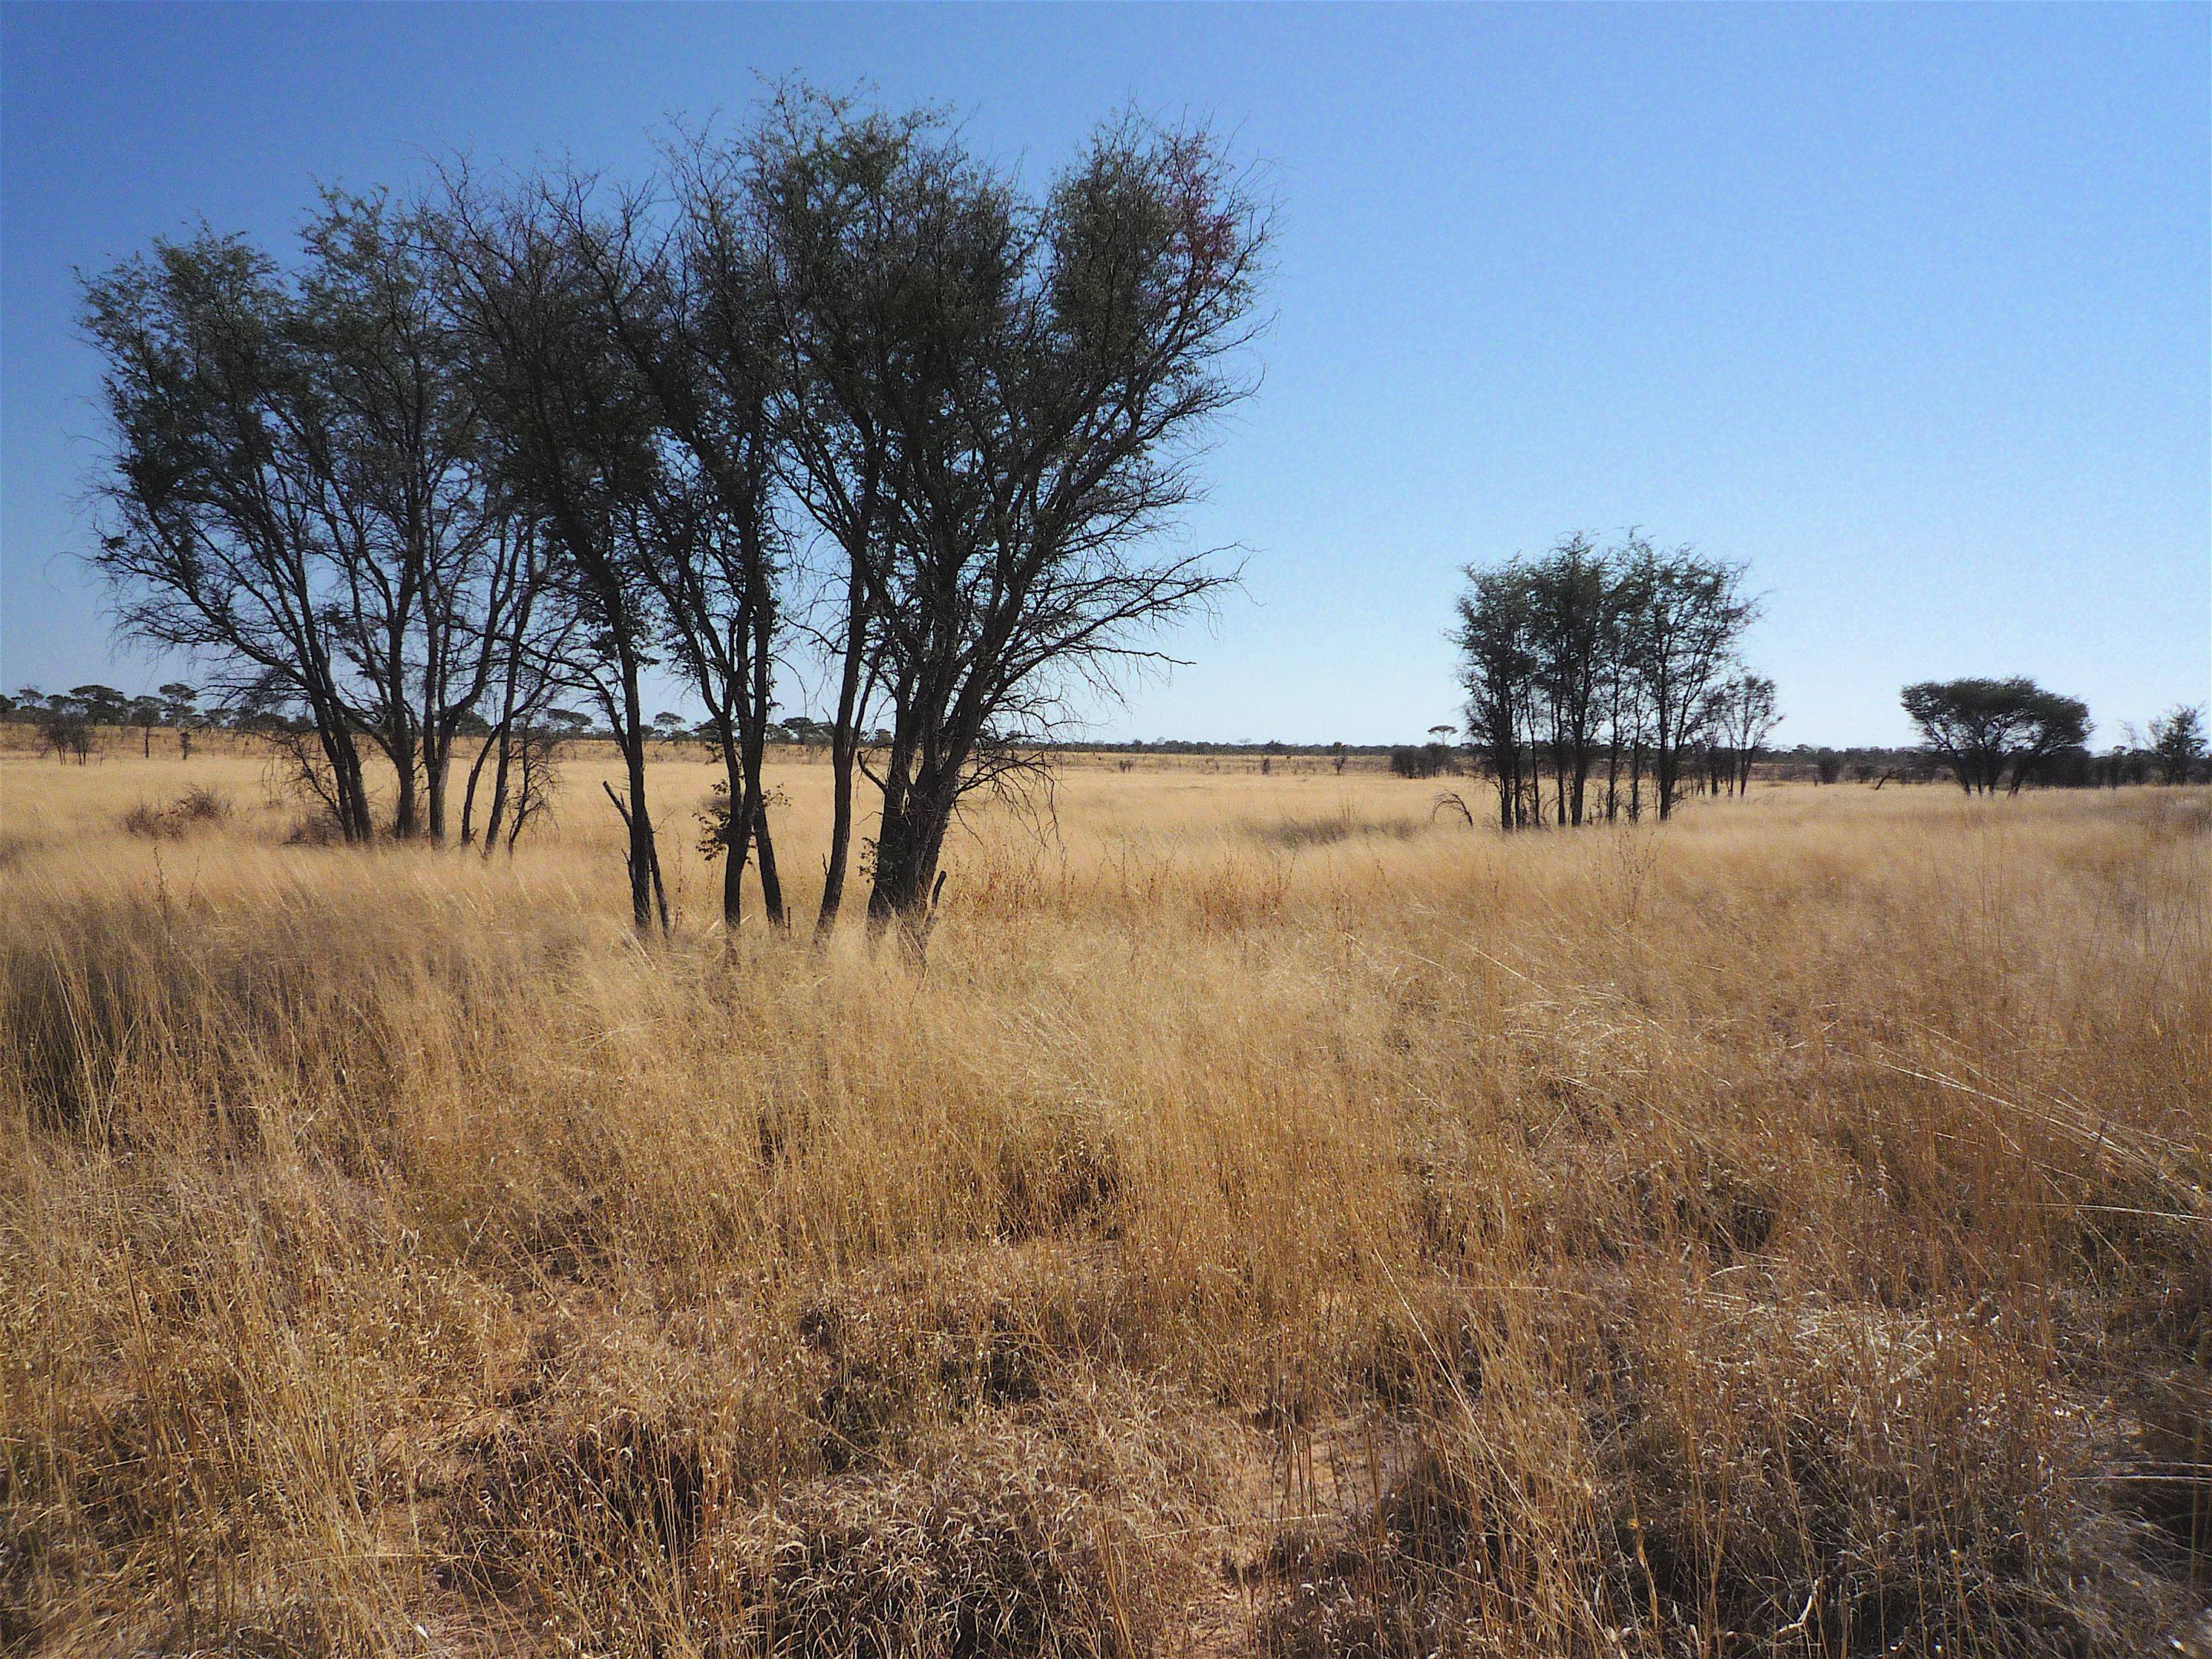 Hacia el Kalahari, tierra de los San (bosquimanos)